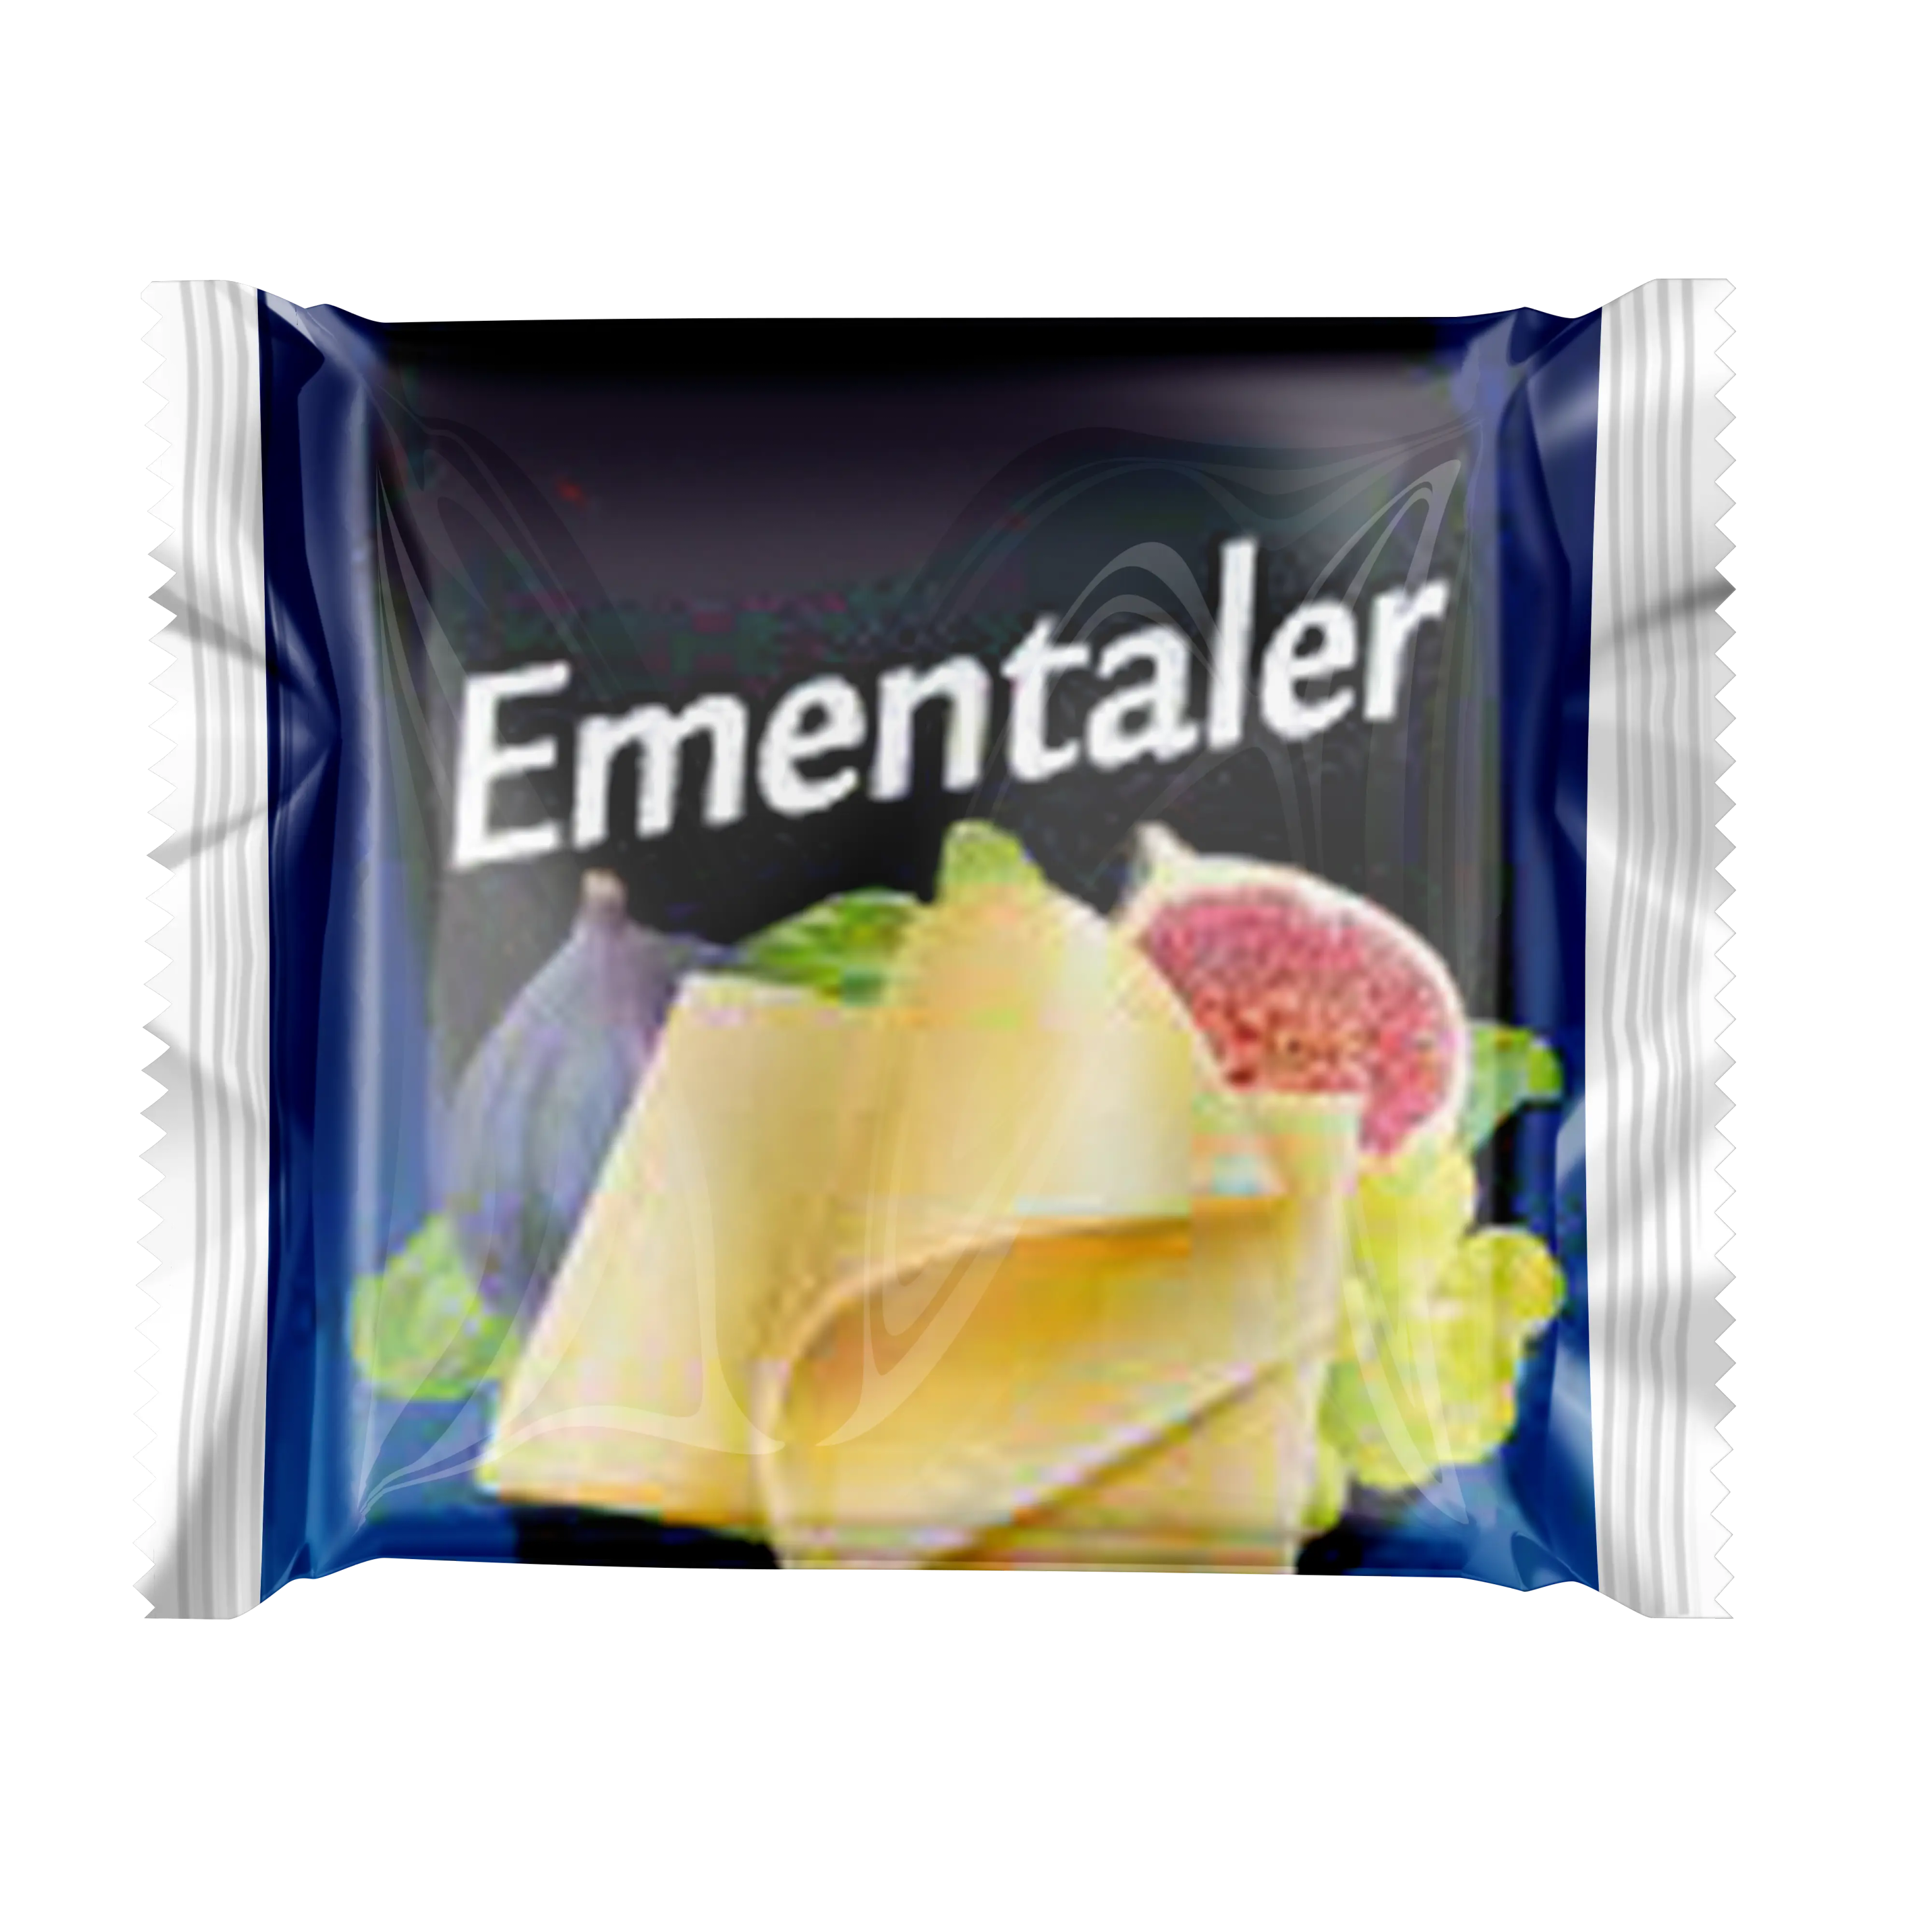 Emmental